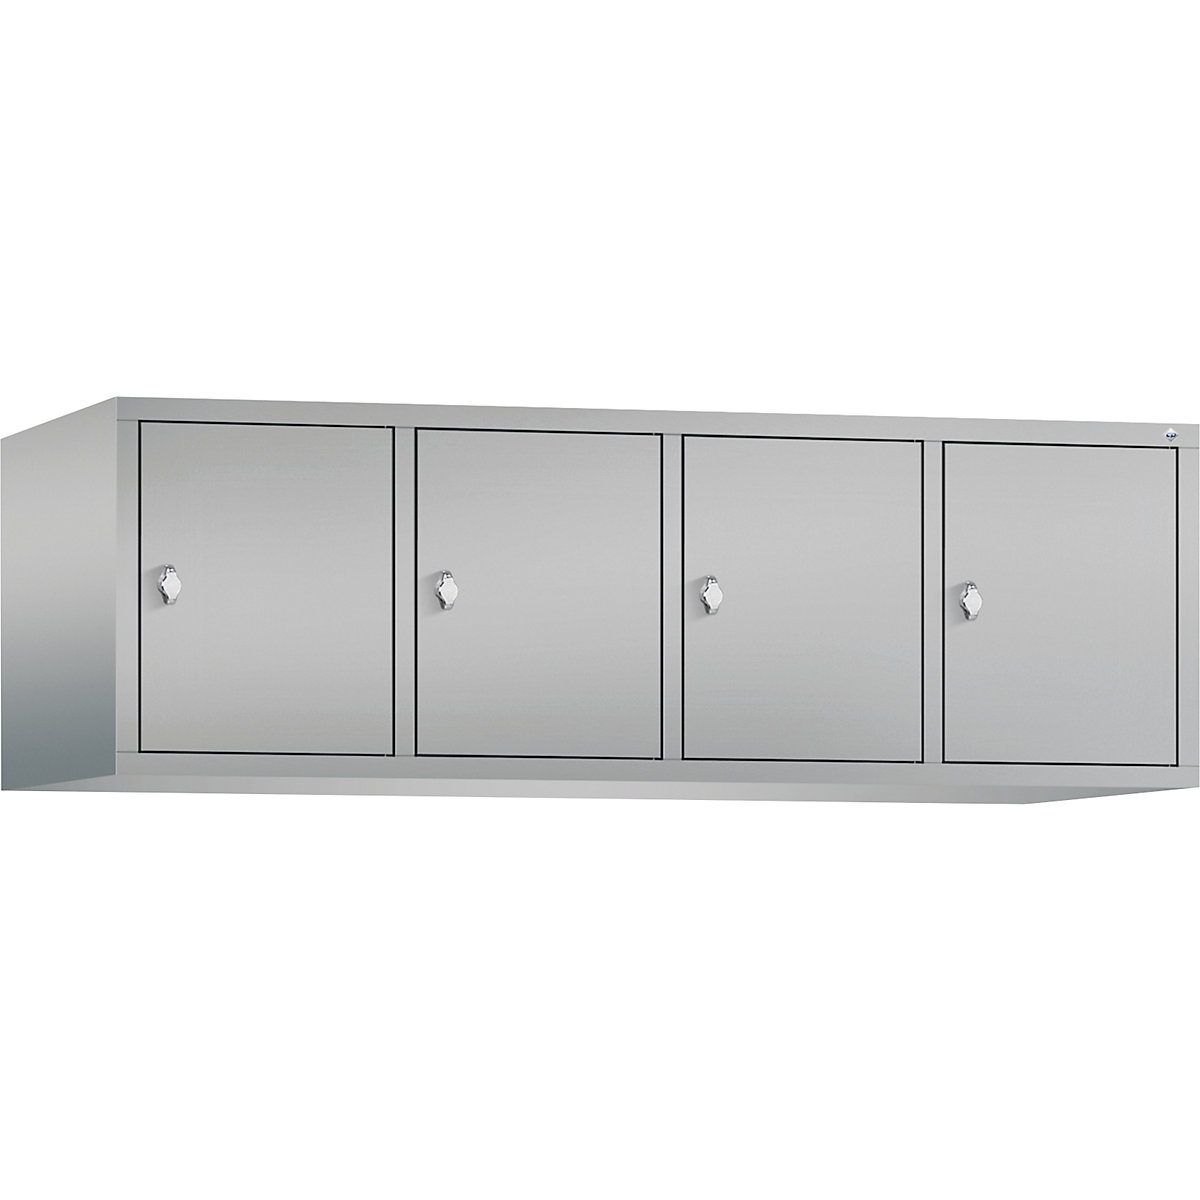 C+P – Altillo CLASSIC, 4 compartimentos, anchura de compartimento 400 mm, aluminio blanco